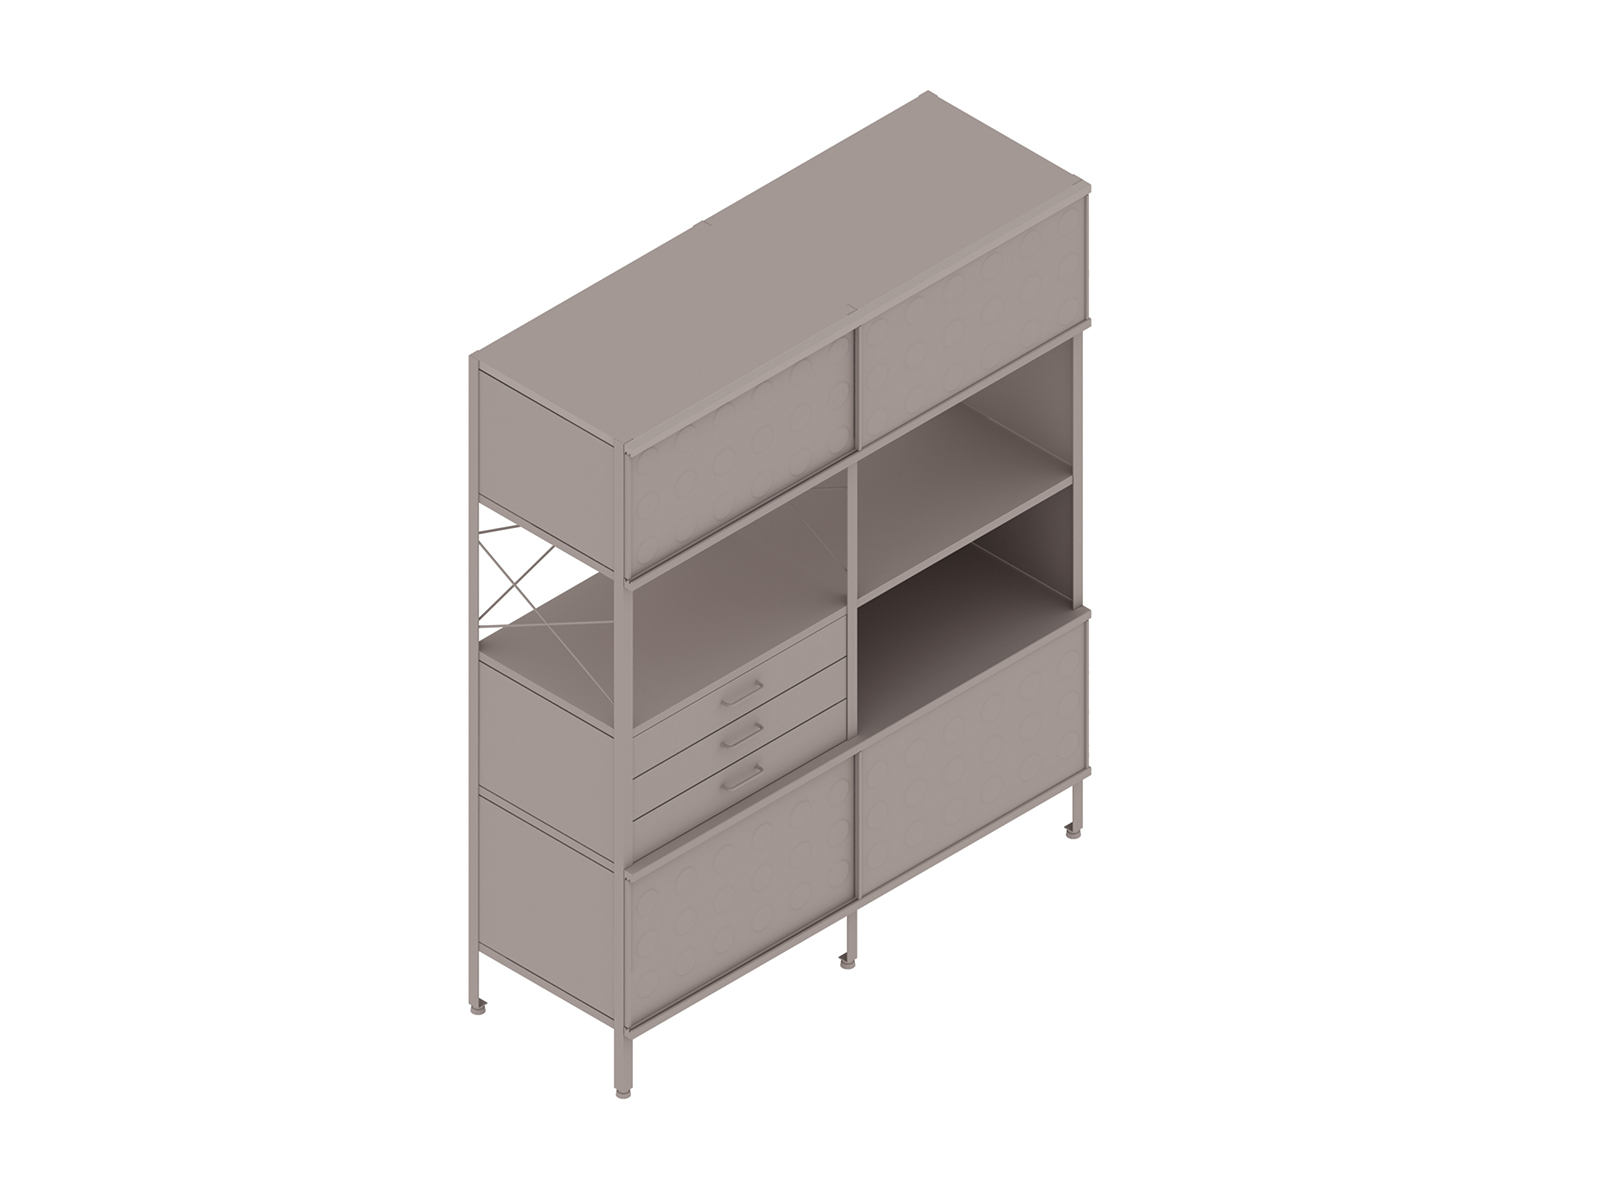 Uma renderização genérica - Unidade de armazenamento Eames–4 alturas por 2 larguras